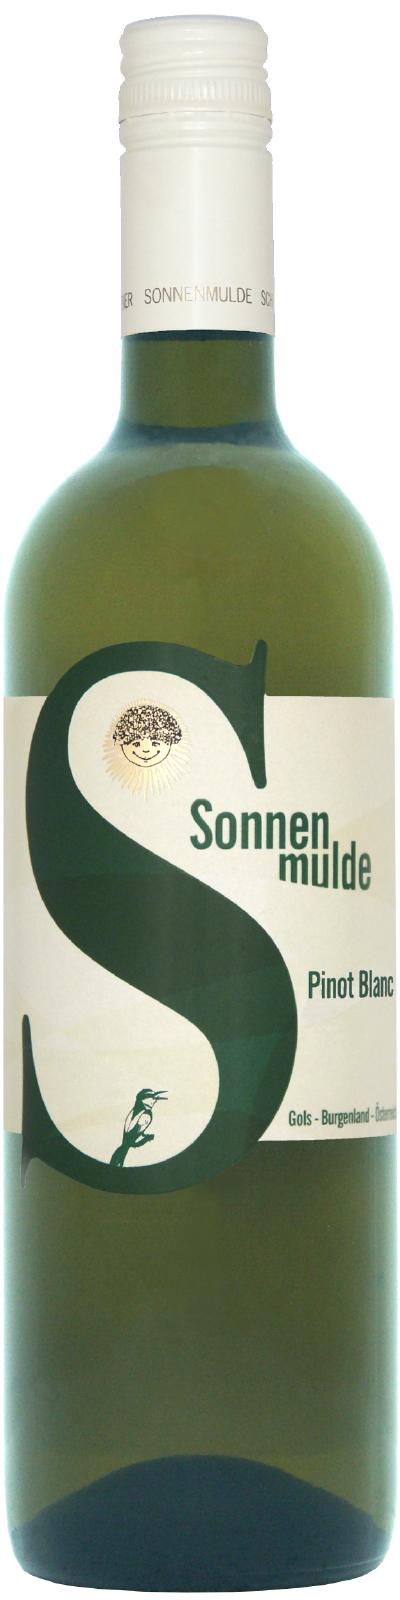 Eine Flasche Pinot Blanc Barrique